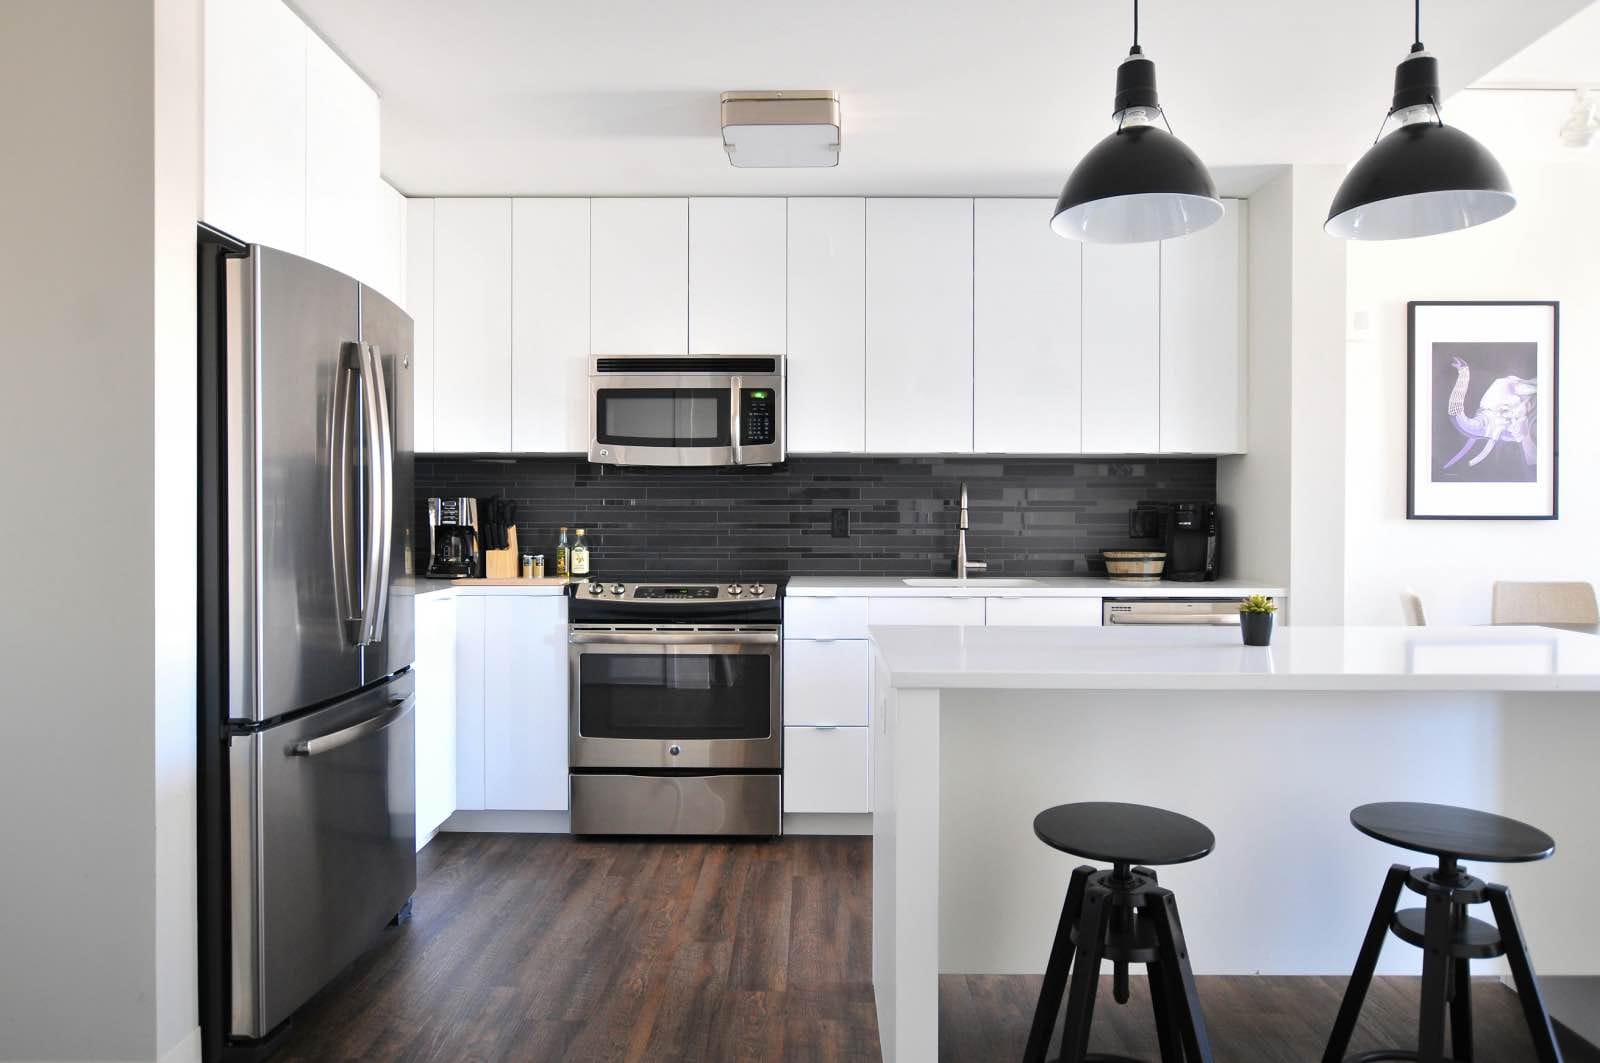 White kitchen with black backsplash